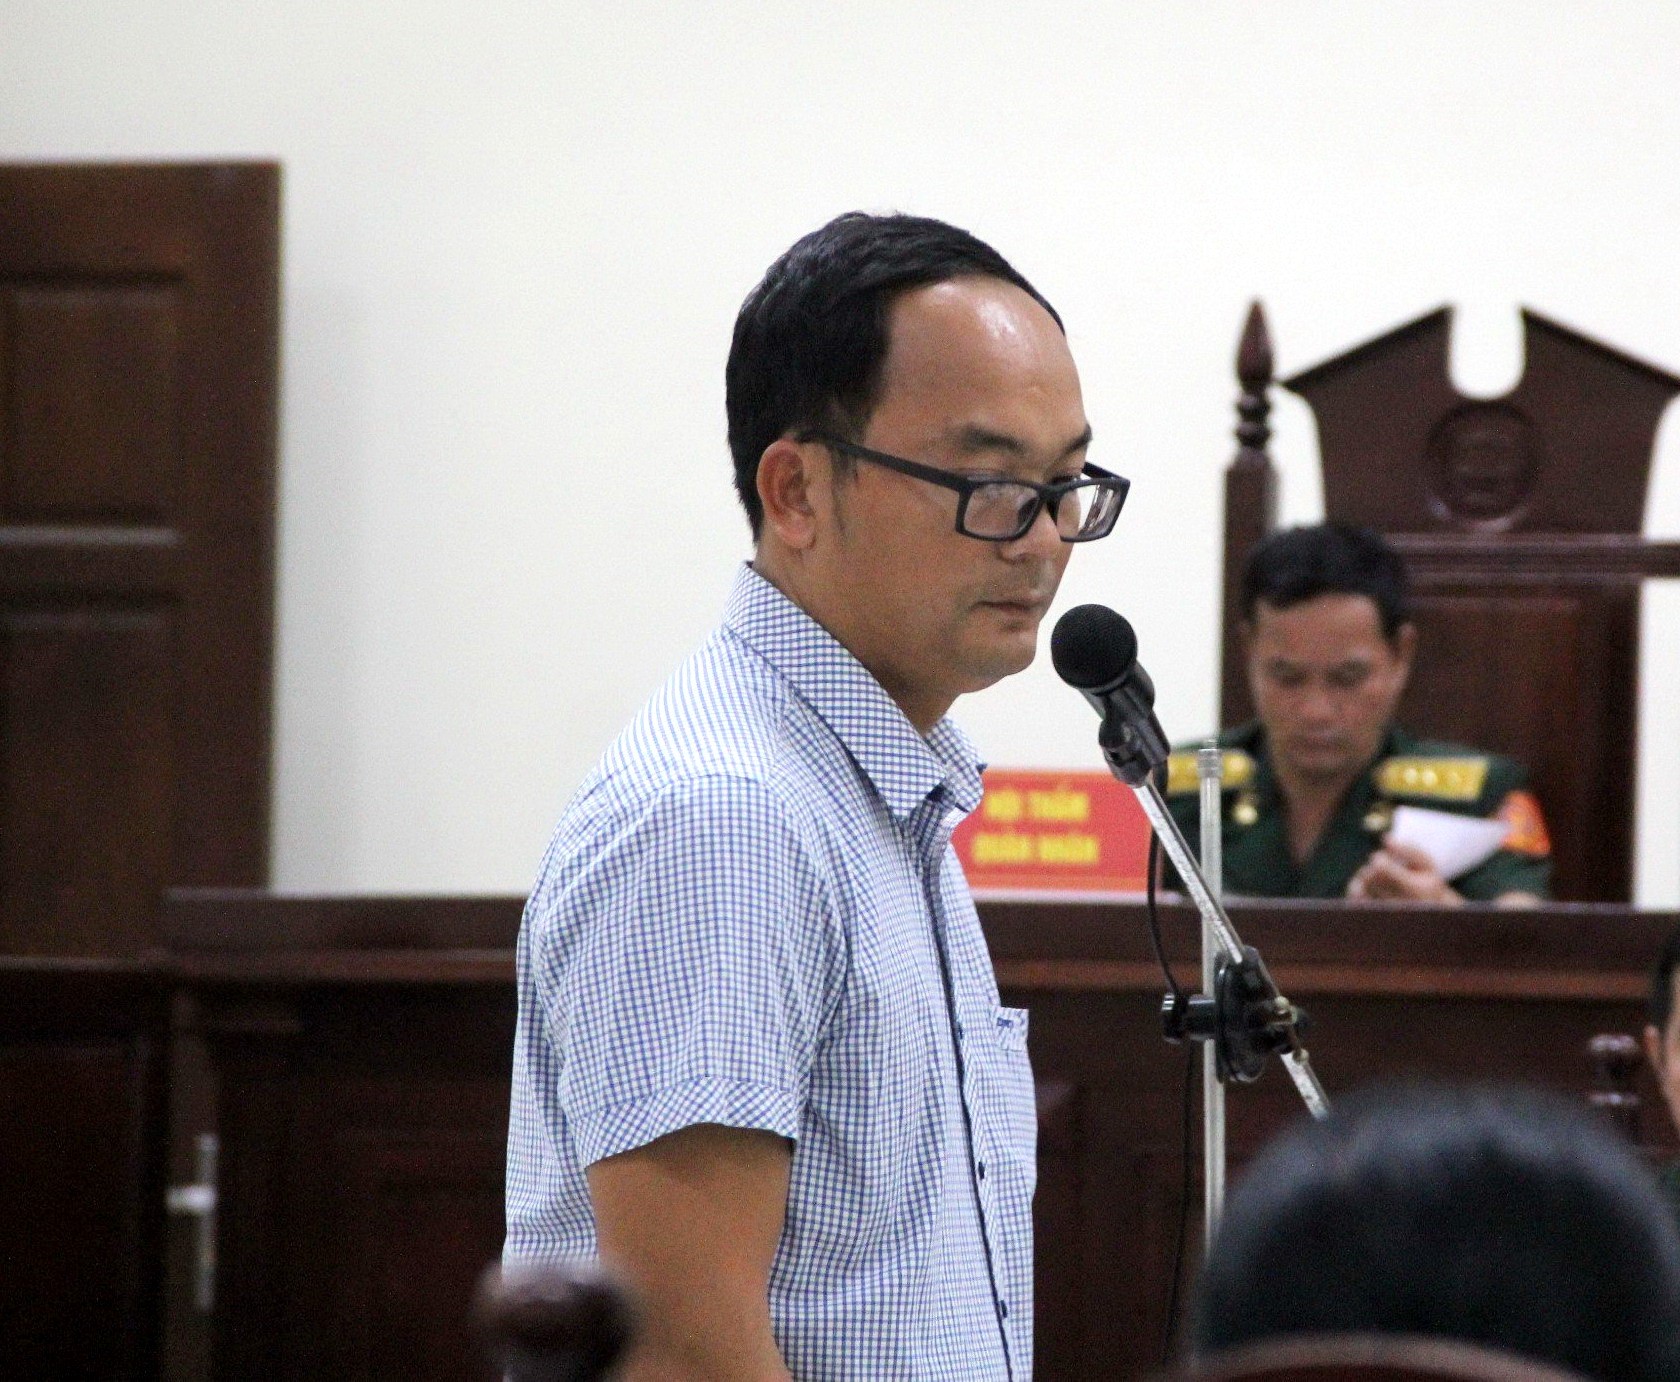 Hồ sơ điều tra - Phạt cựu Thiếu tá tông chết nữ sinh lớp 12 ở Ninh Thuận 14 tháng tù (Hình 2).